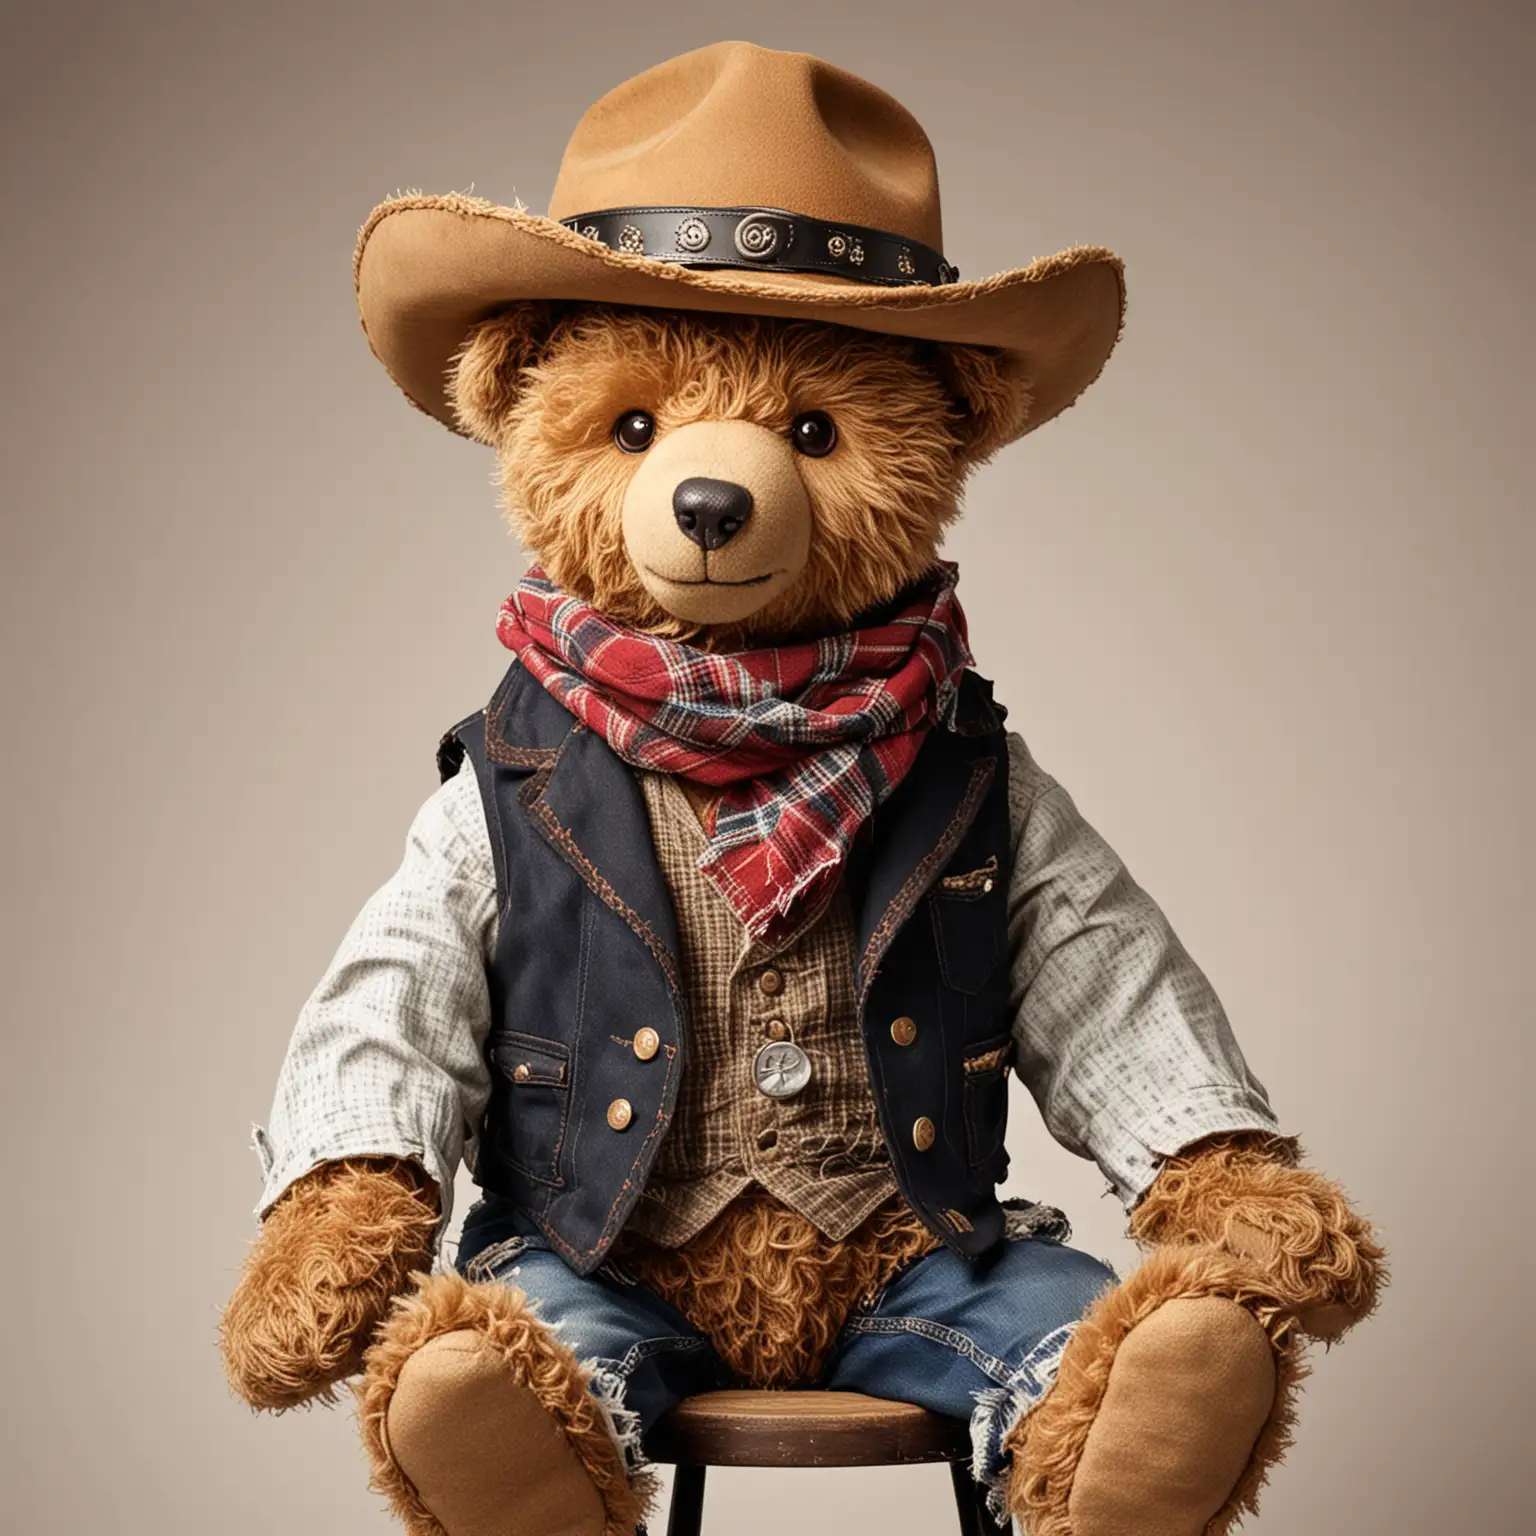 Vintage Cowboy Teddy Bear at a Saloon